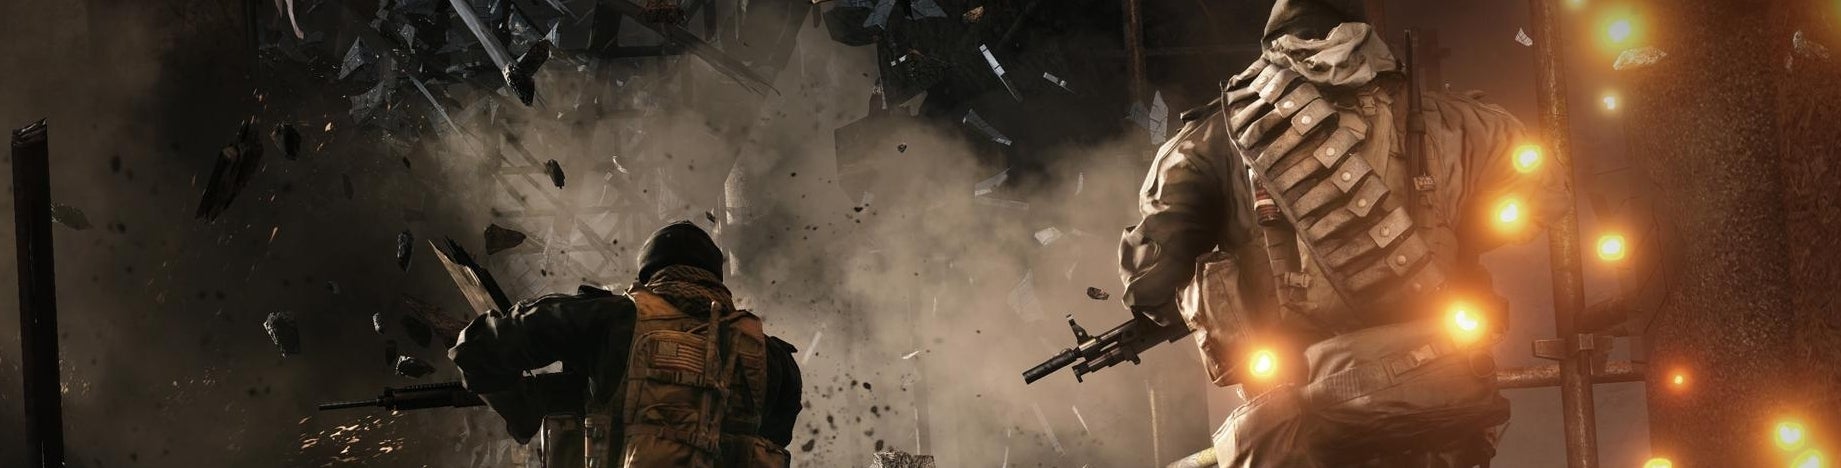 Bilder zu Eg.de Frühstart - Call of Duty: Ghosts, Windows 8.1, Battlefield 4